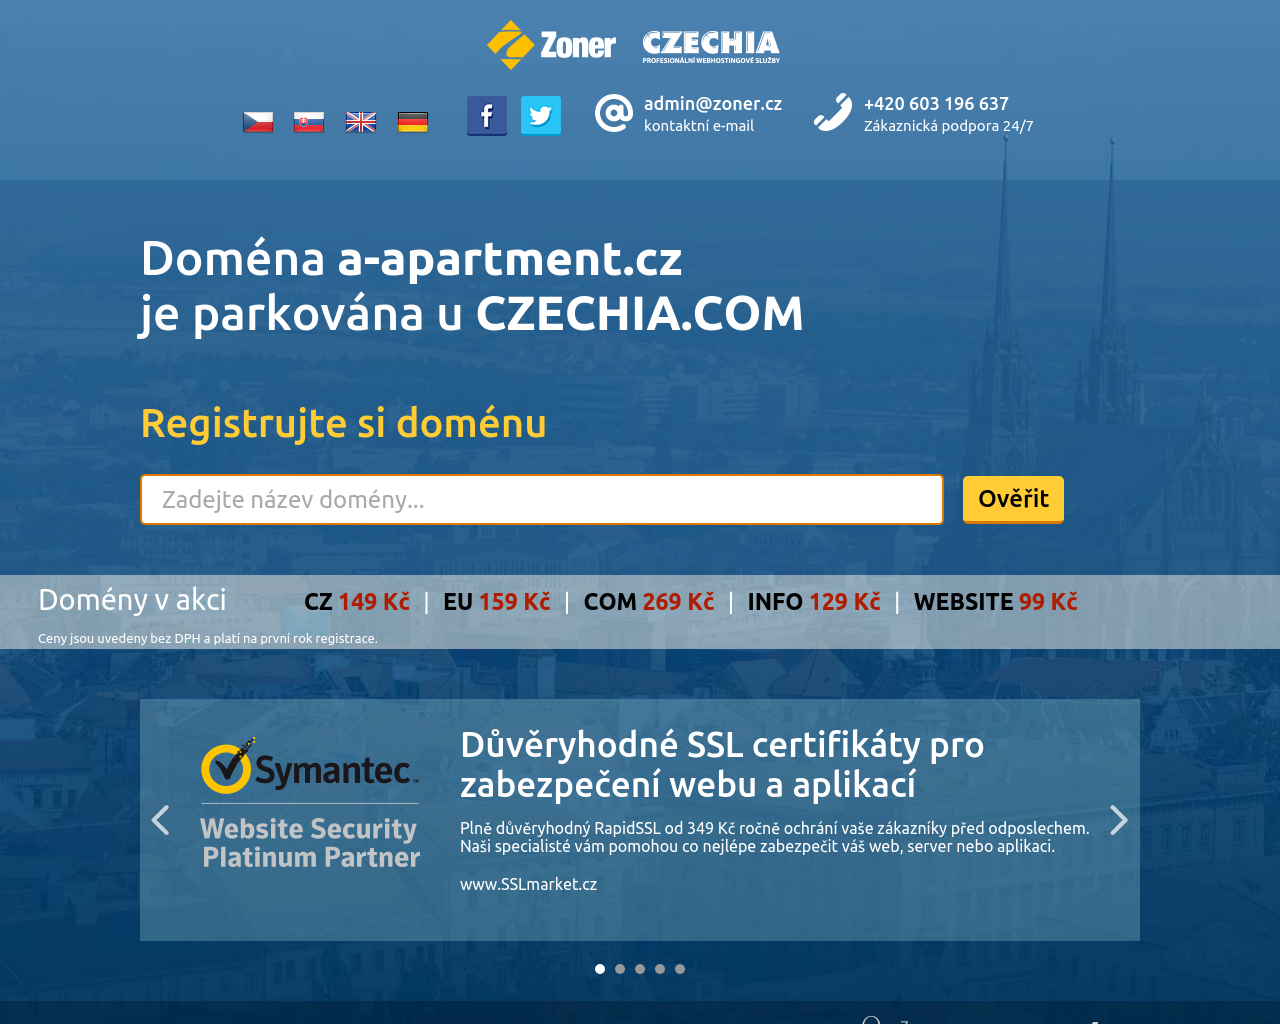 Site Image a-apartment.cz v 1280x1024